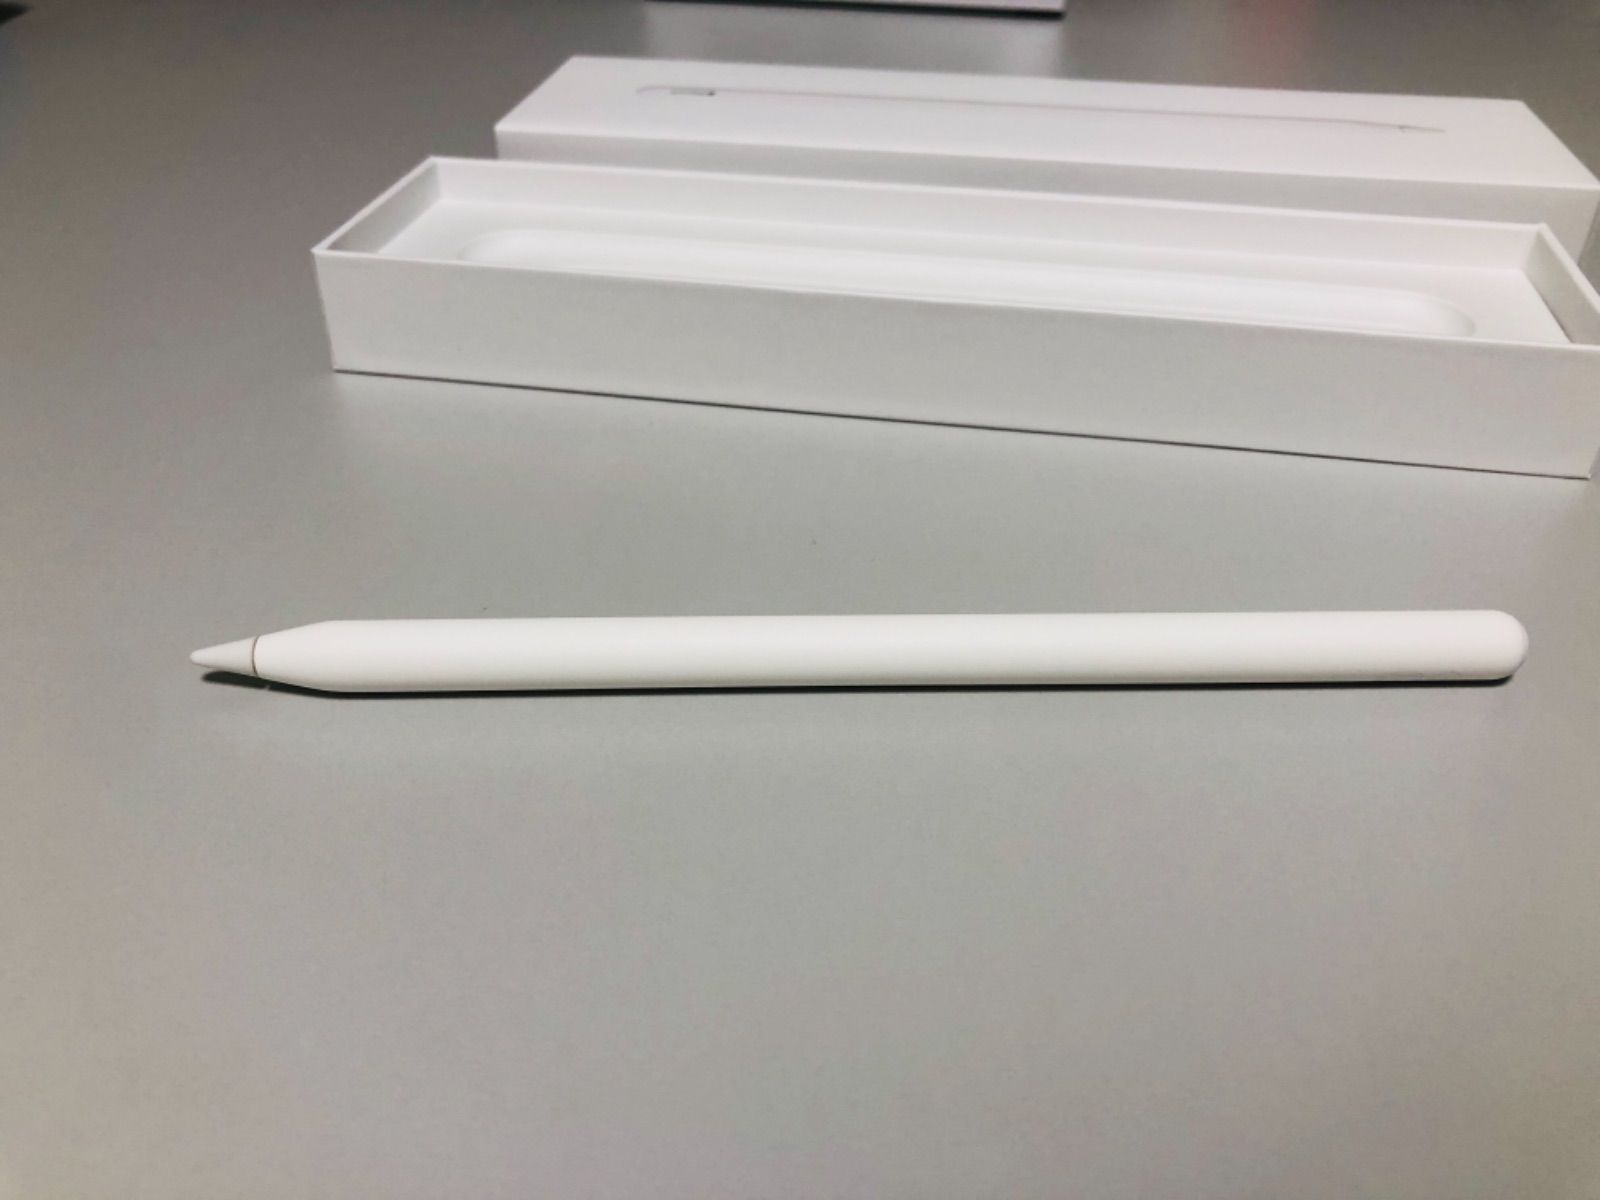 12.9インチiPad Pro(第4世代) Apple Pencil(第2世代) - pinoショップ ...